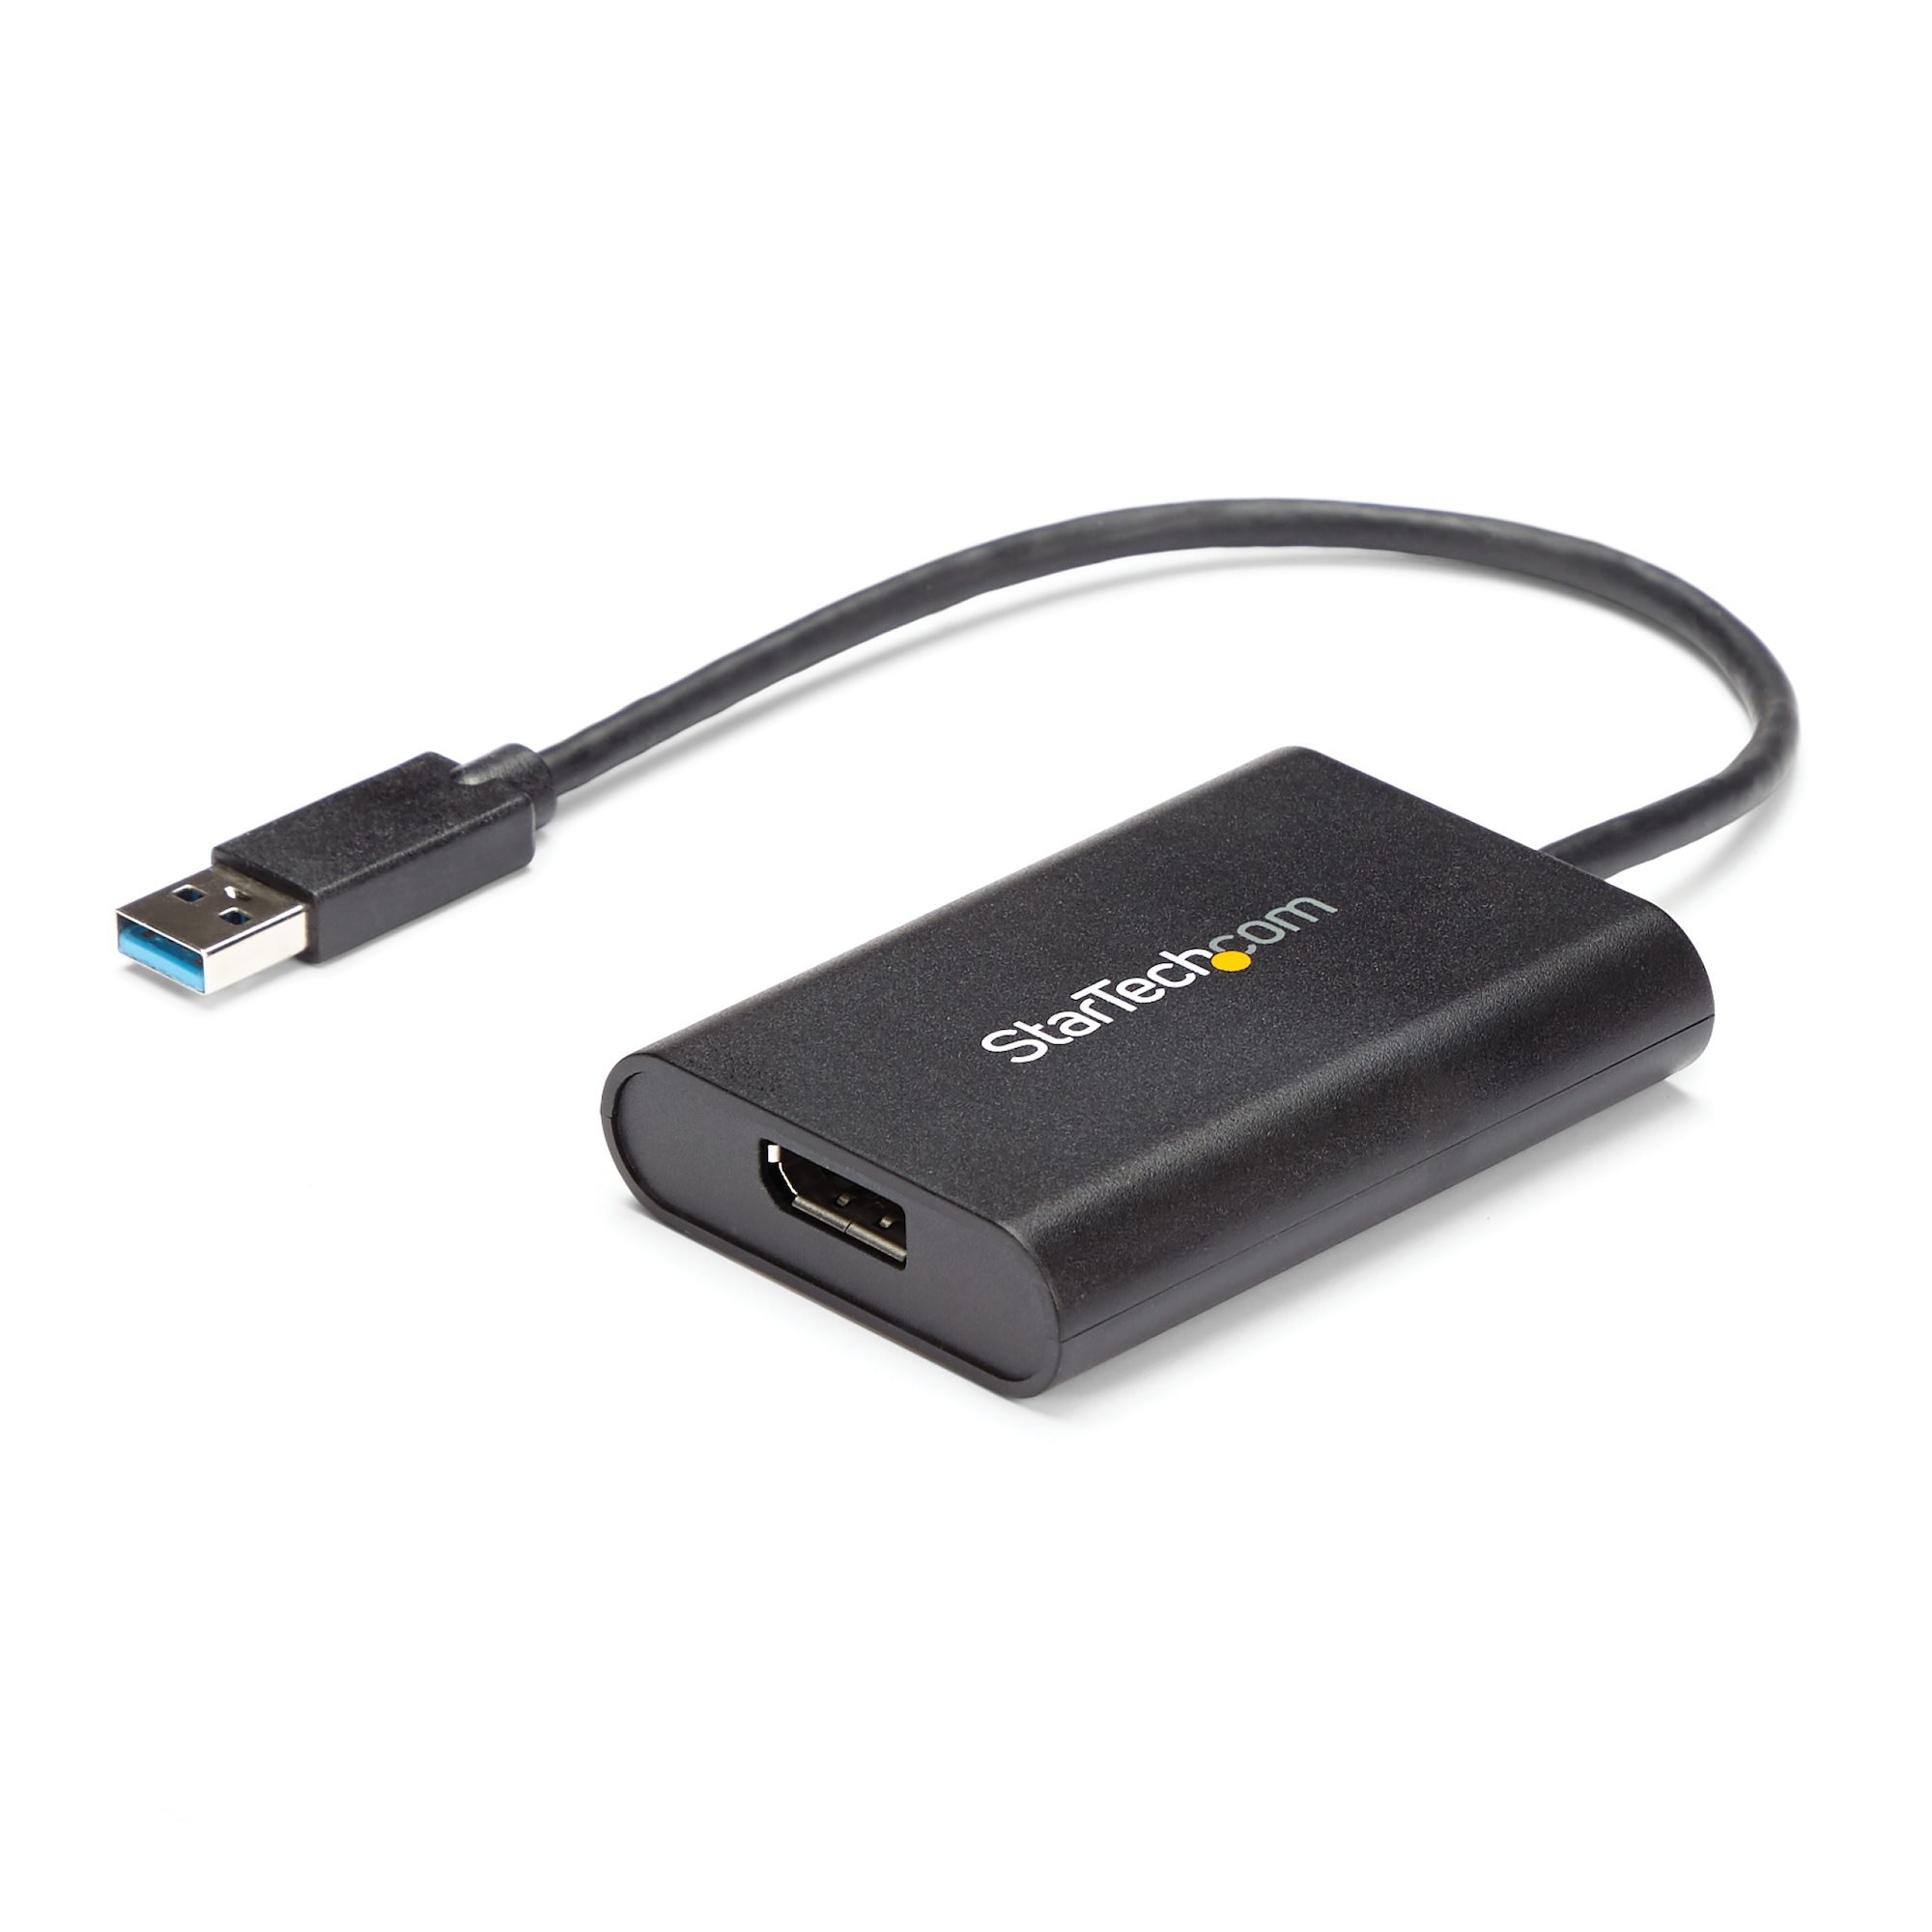 【USB32DPES2】USB TO DISPLAYPORT ADAPTER - USB